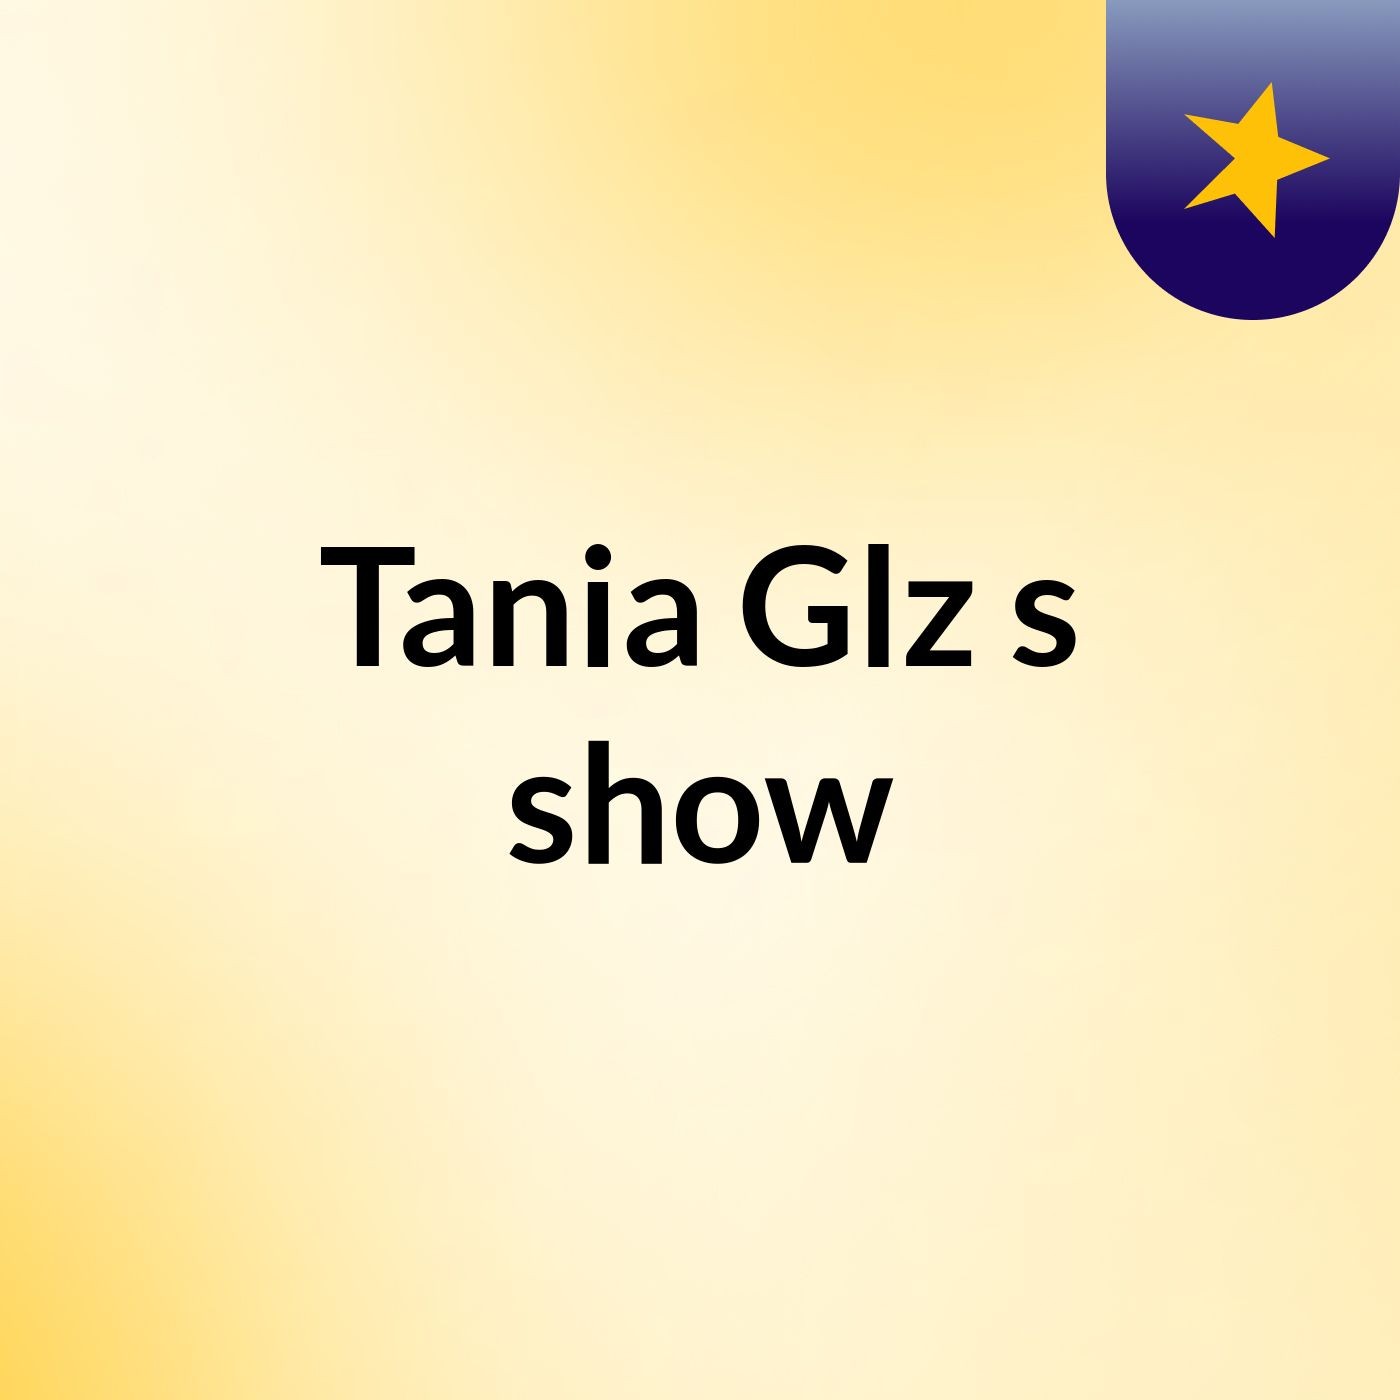 Tania Glz's show